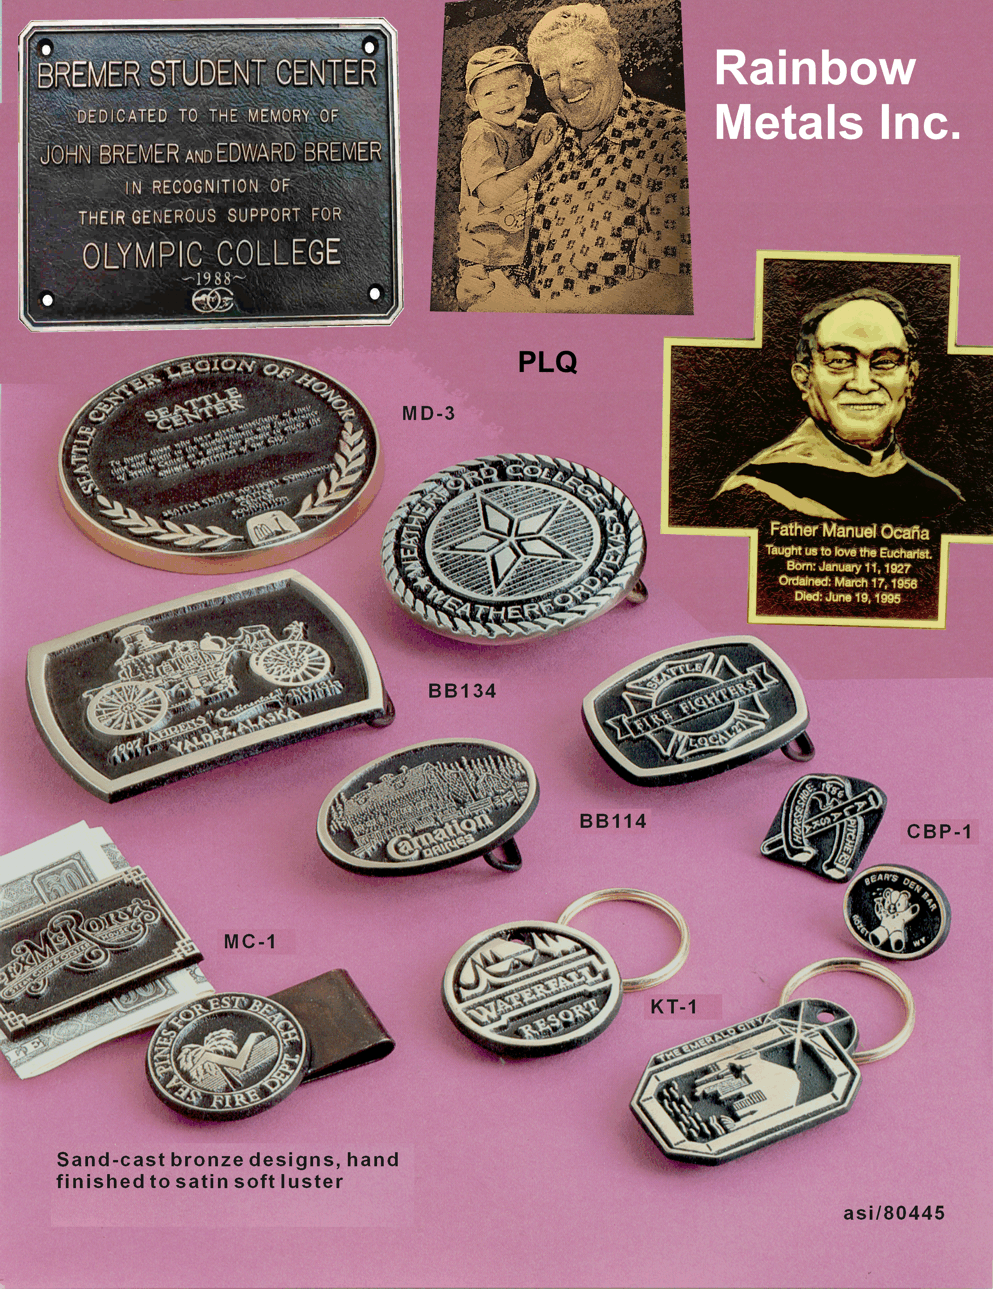 assorted bronze items